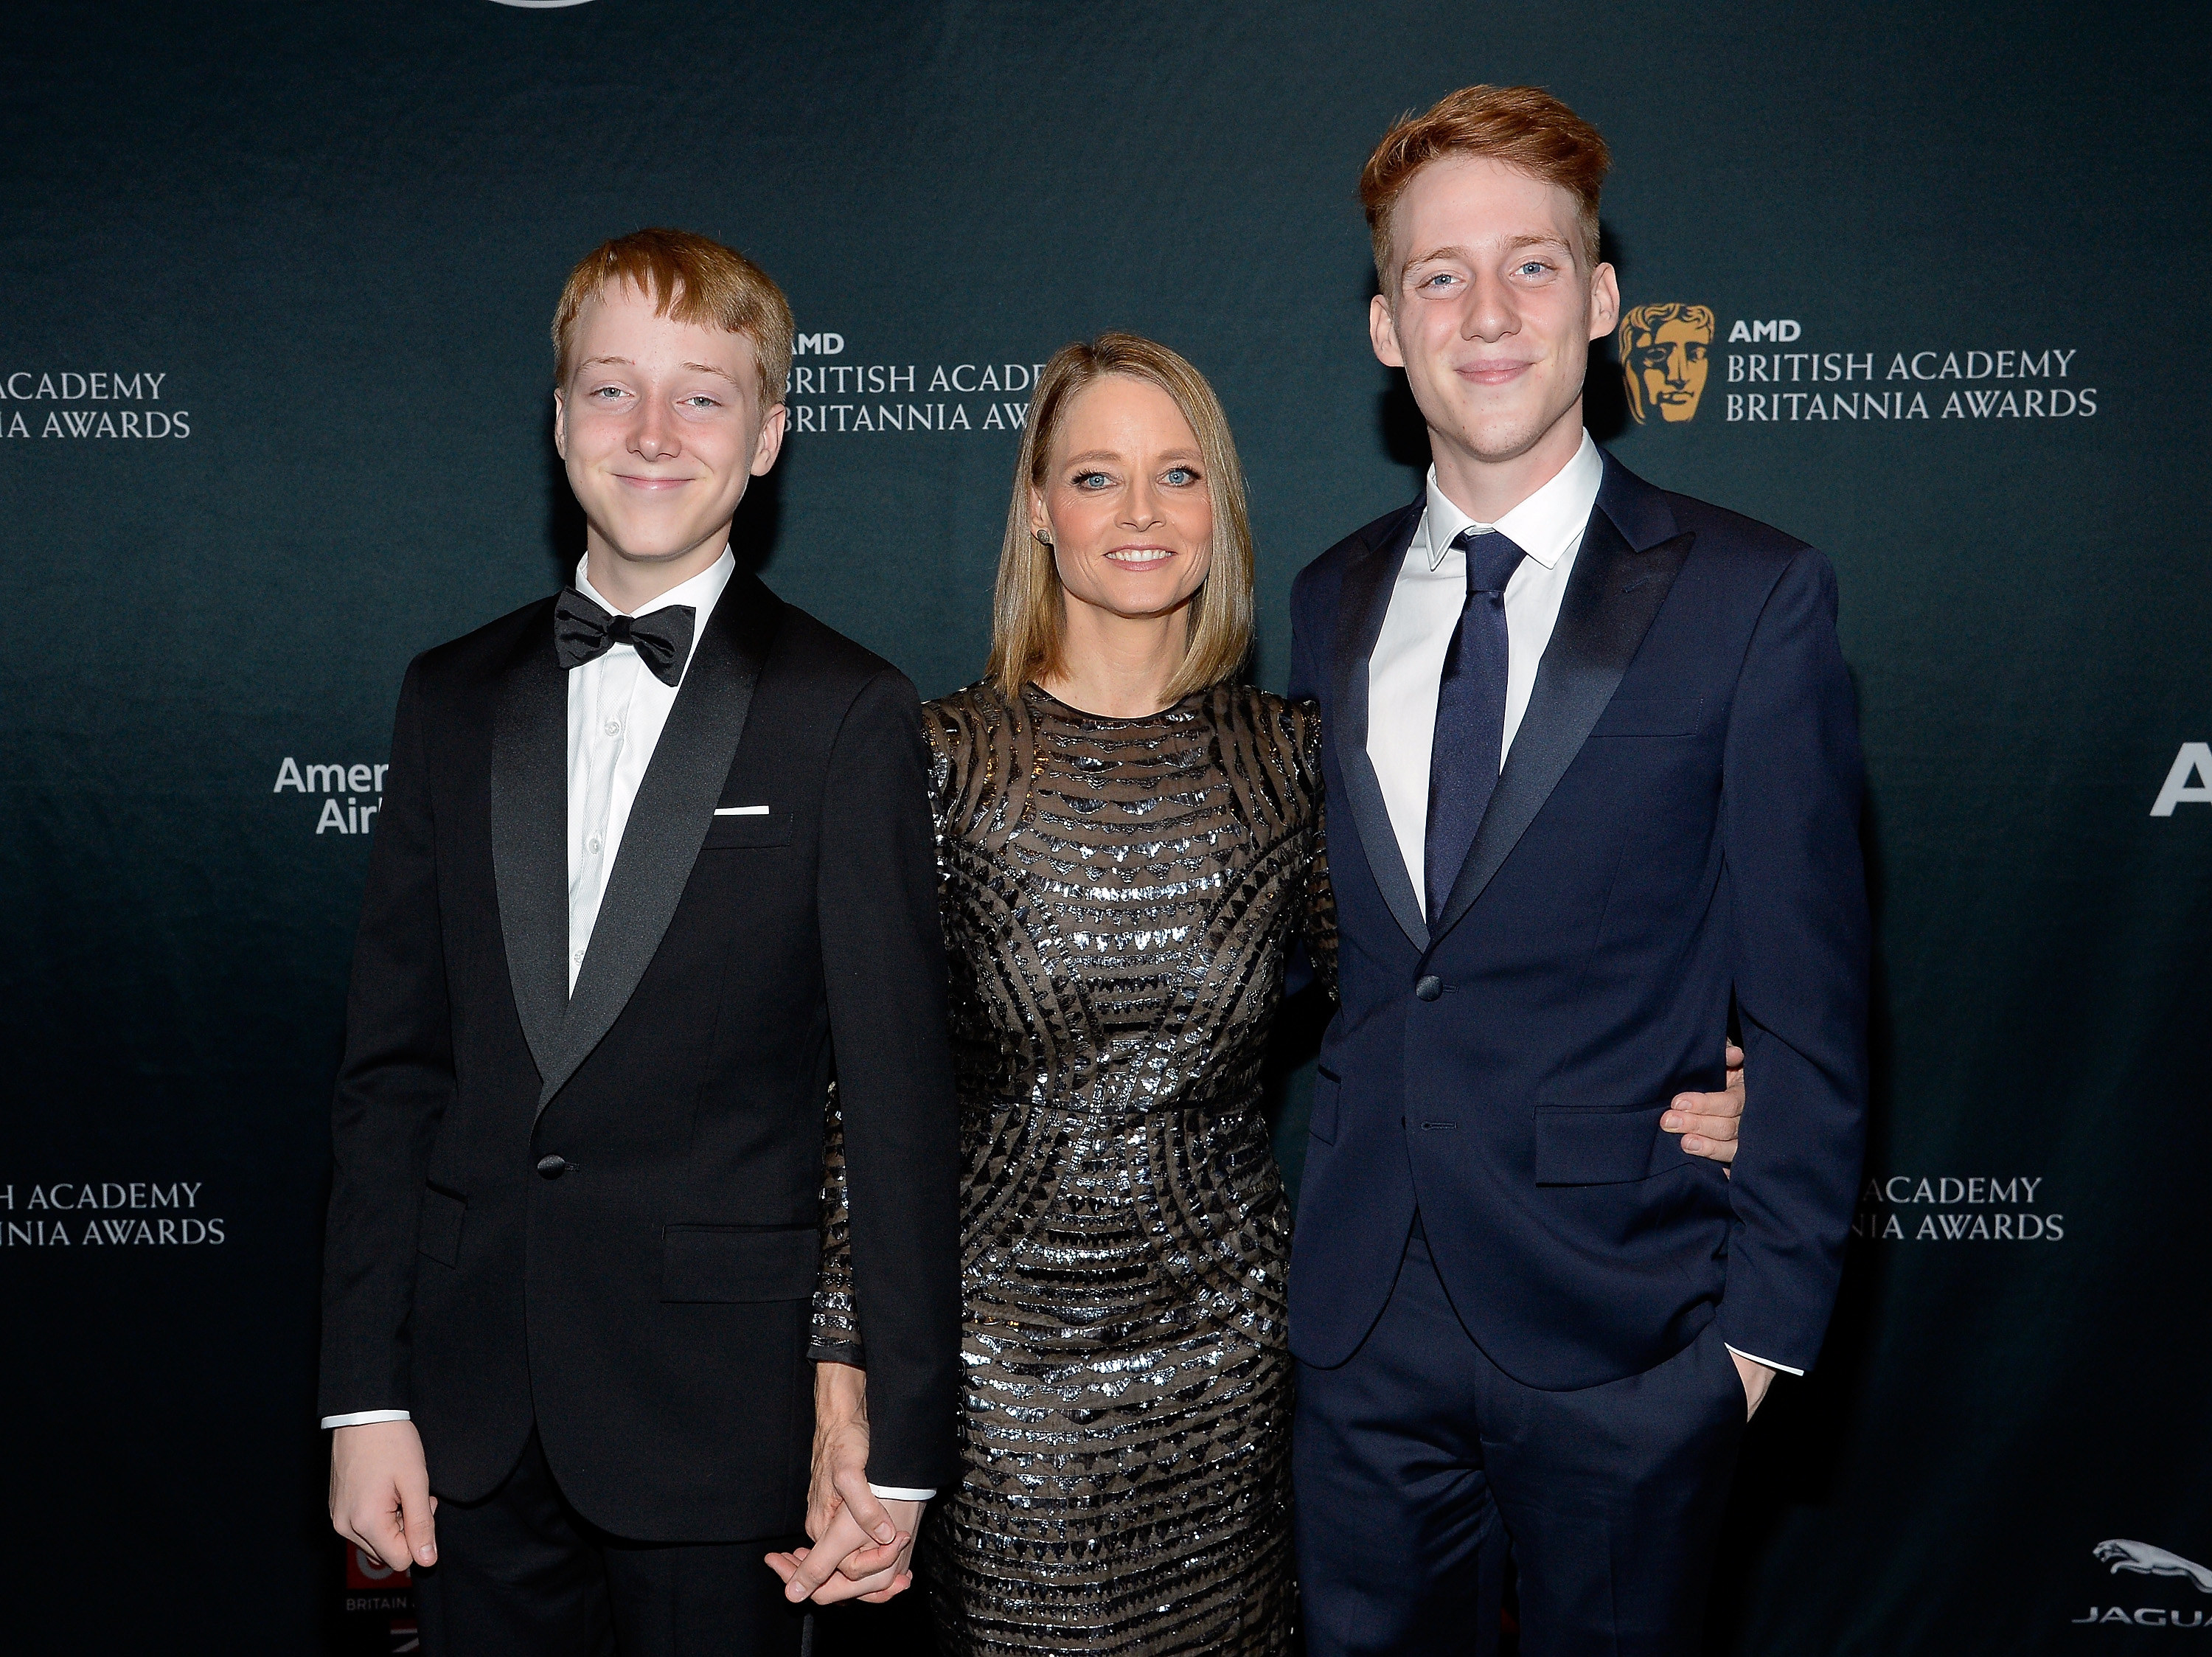 Kit Bernard Foster, Jodie Foster, and Charles Bernard Foster attend an awards function